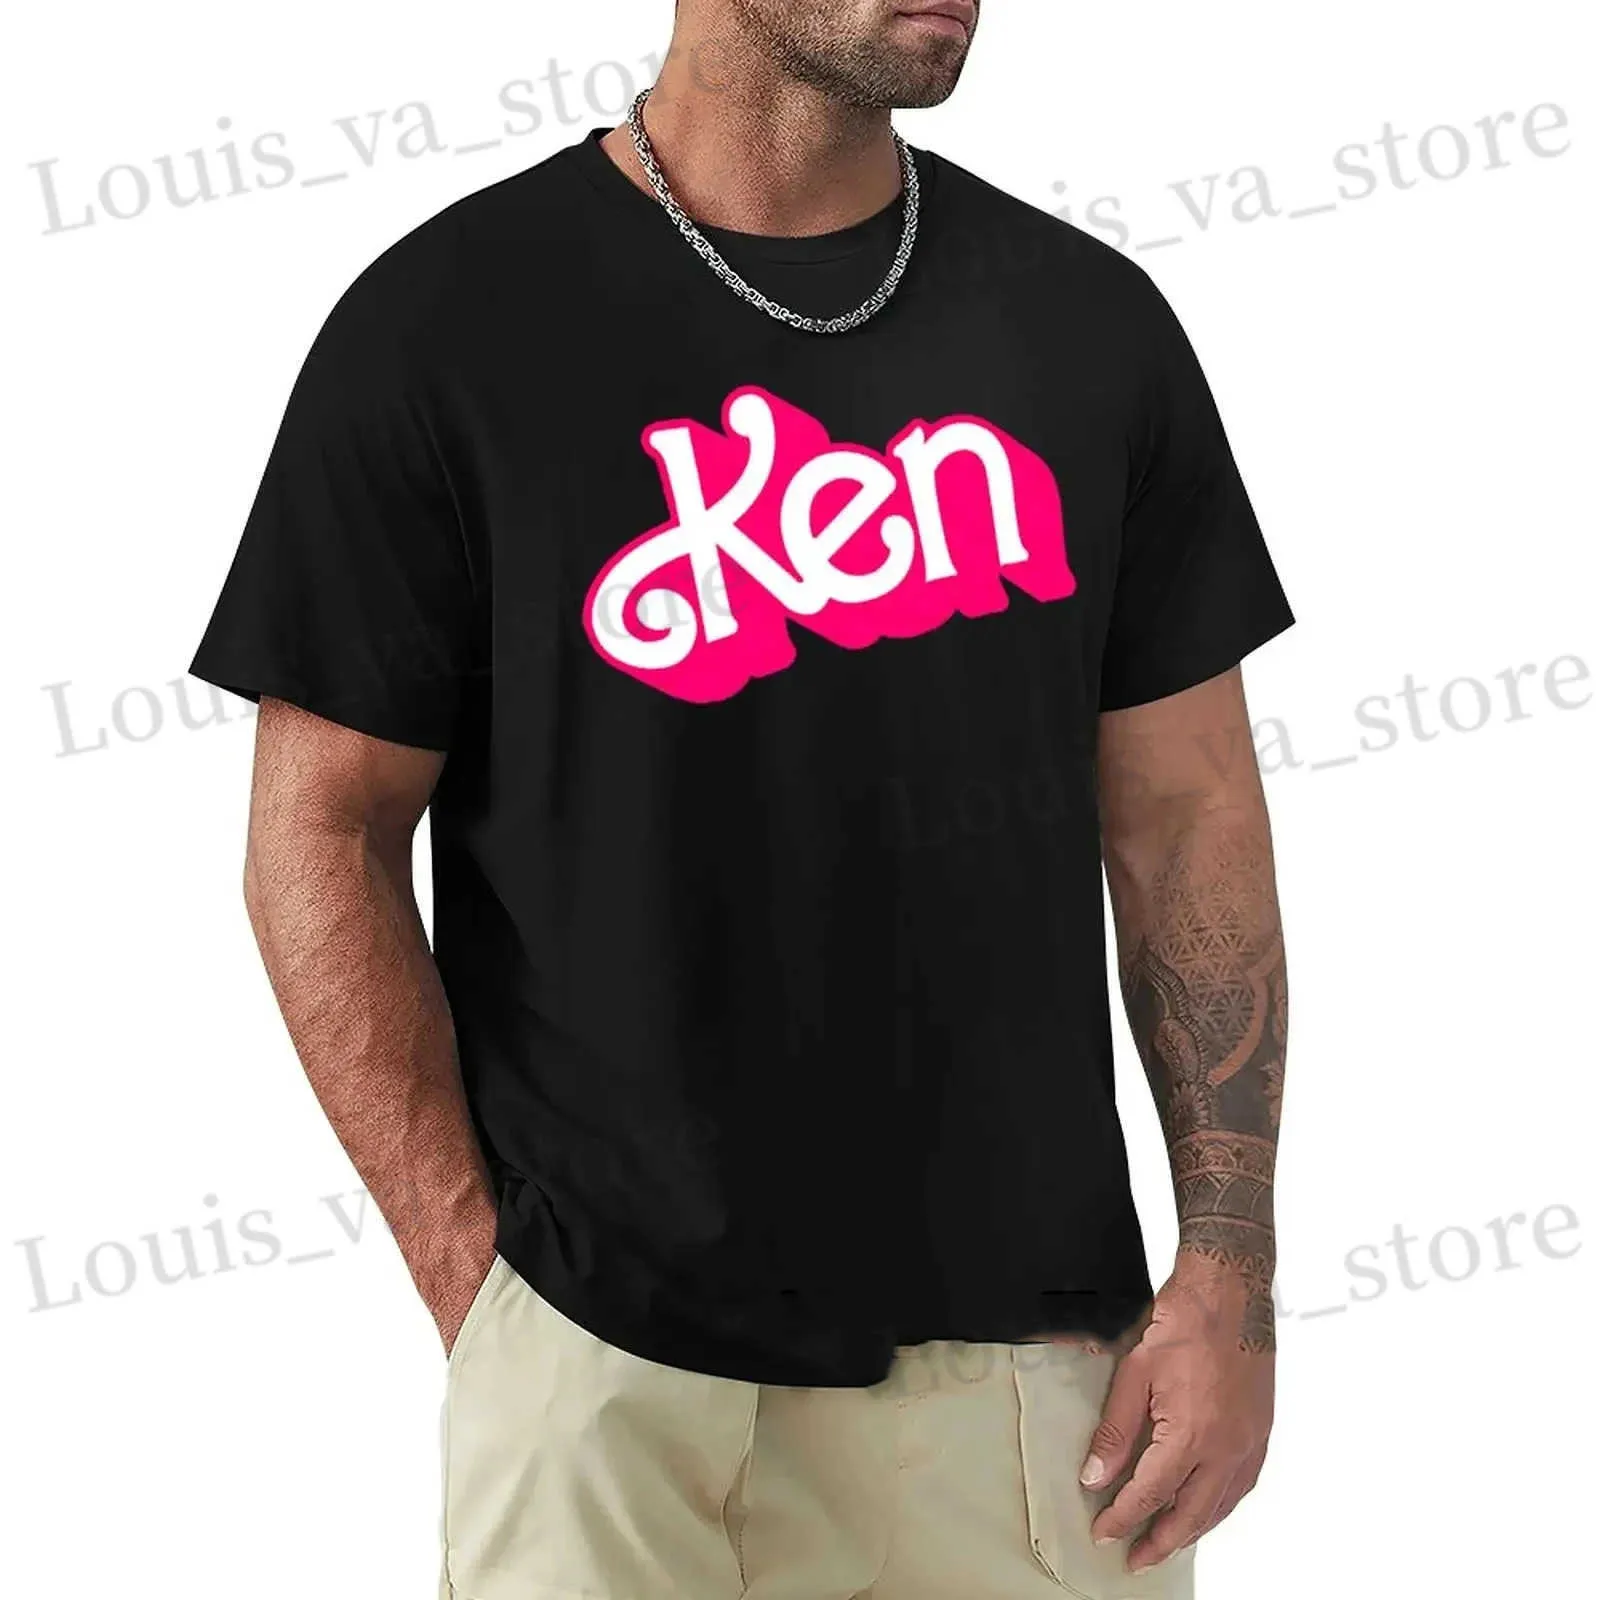 Мужские футболки Мужчина Летняя модная хлопковая футболка Ken Letter Print Tops TS мужской повседневную одежду Одеальную одежду короткая Slve Harajuku Strtwear T240419